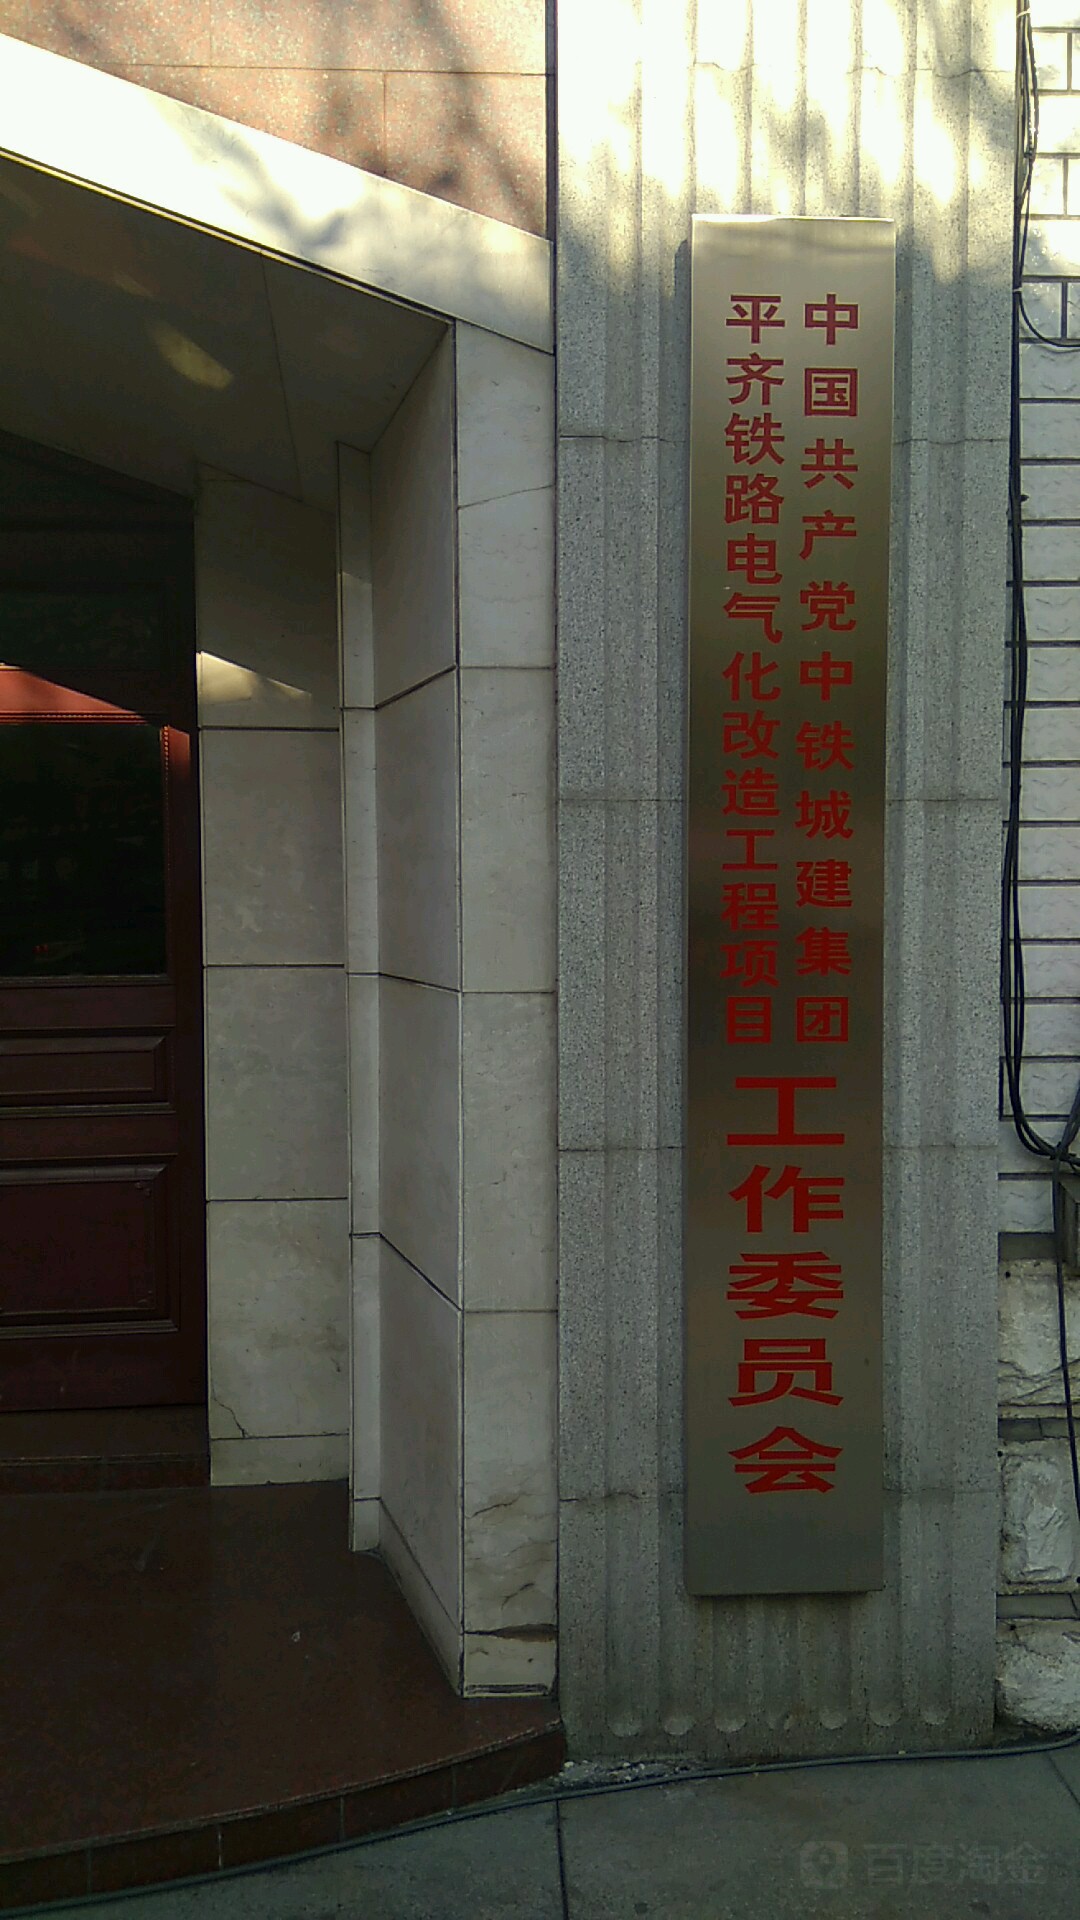 中國共產黨中鐵城建集團平齊鐵路電氣化改造工程項目工作委員會